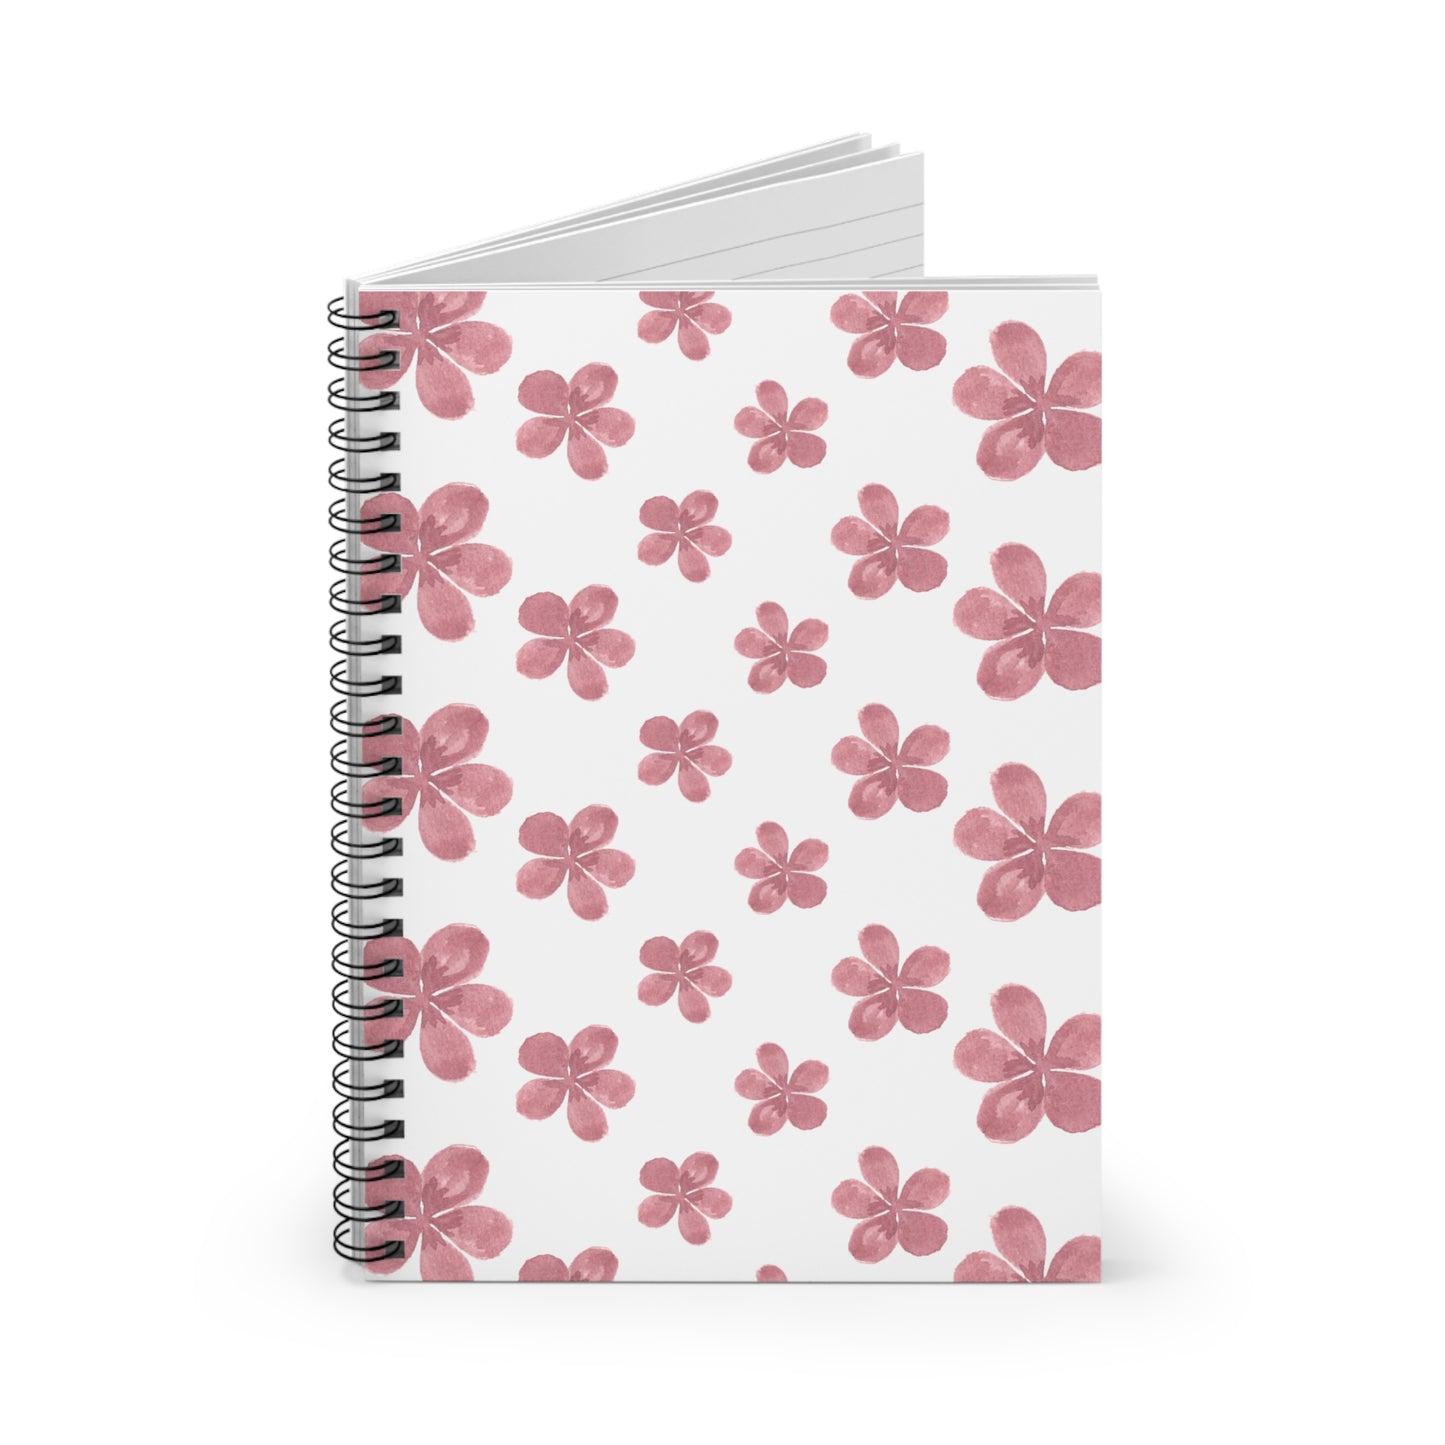 Vintage Pink Flower Spiral Notebook - Ruled Line